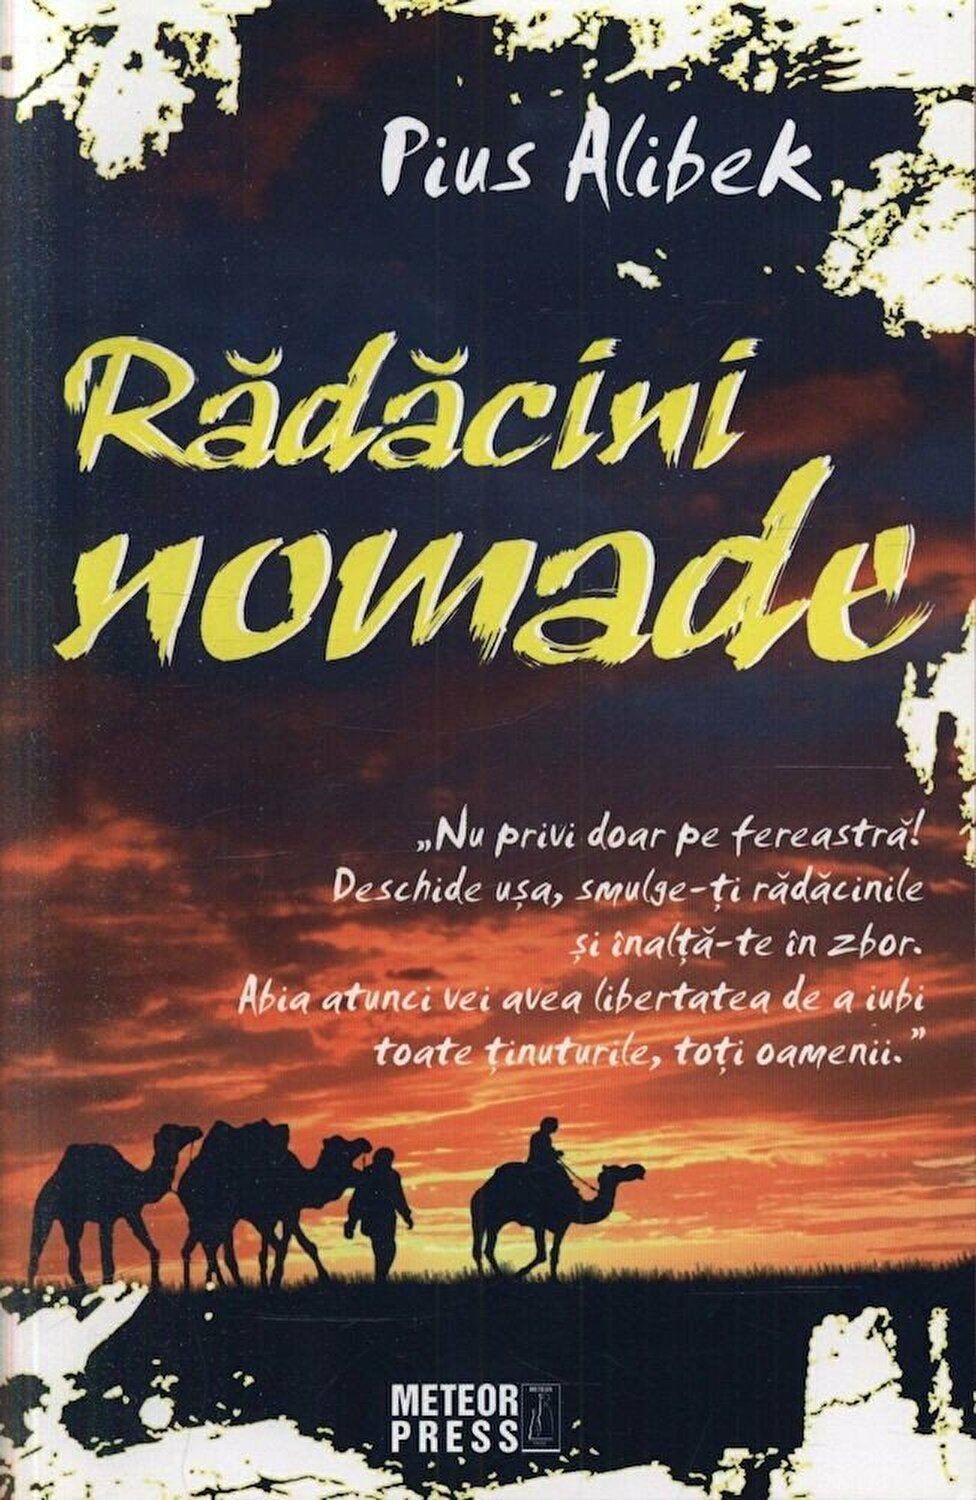 Radacini nomade